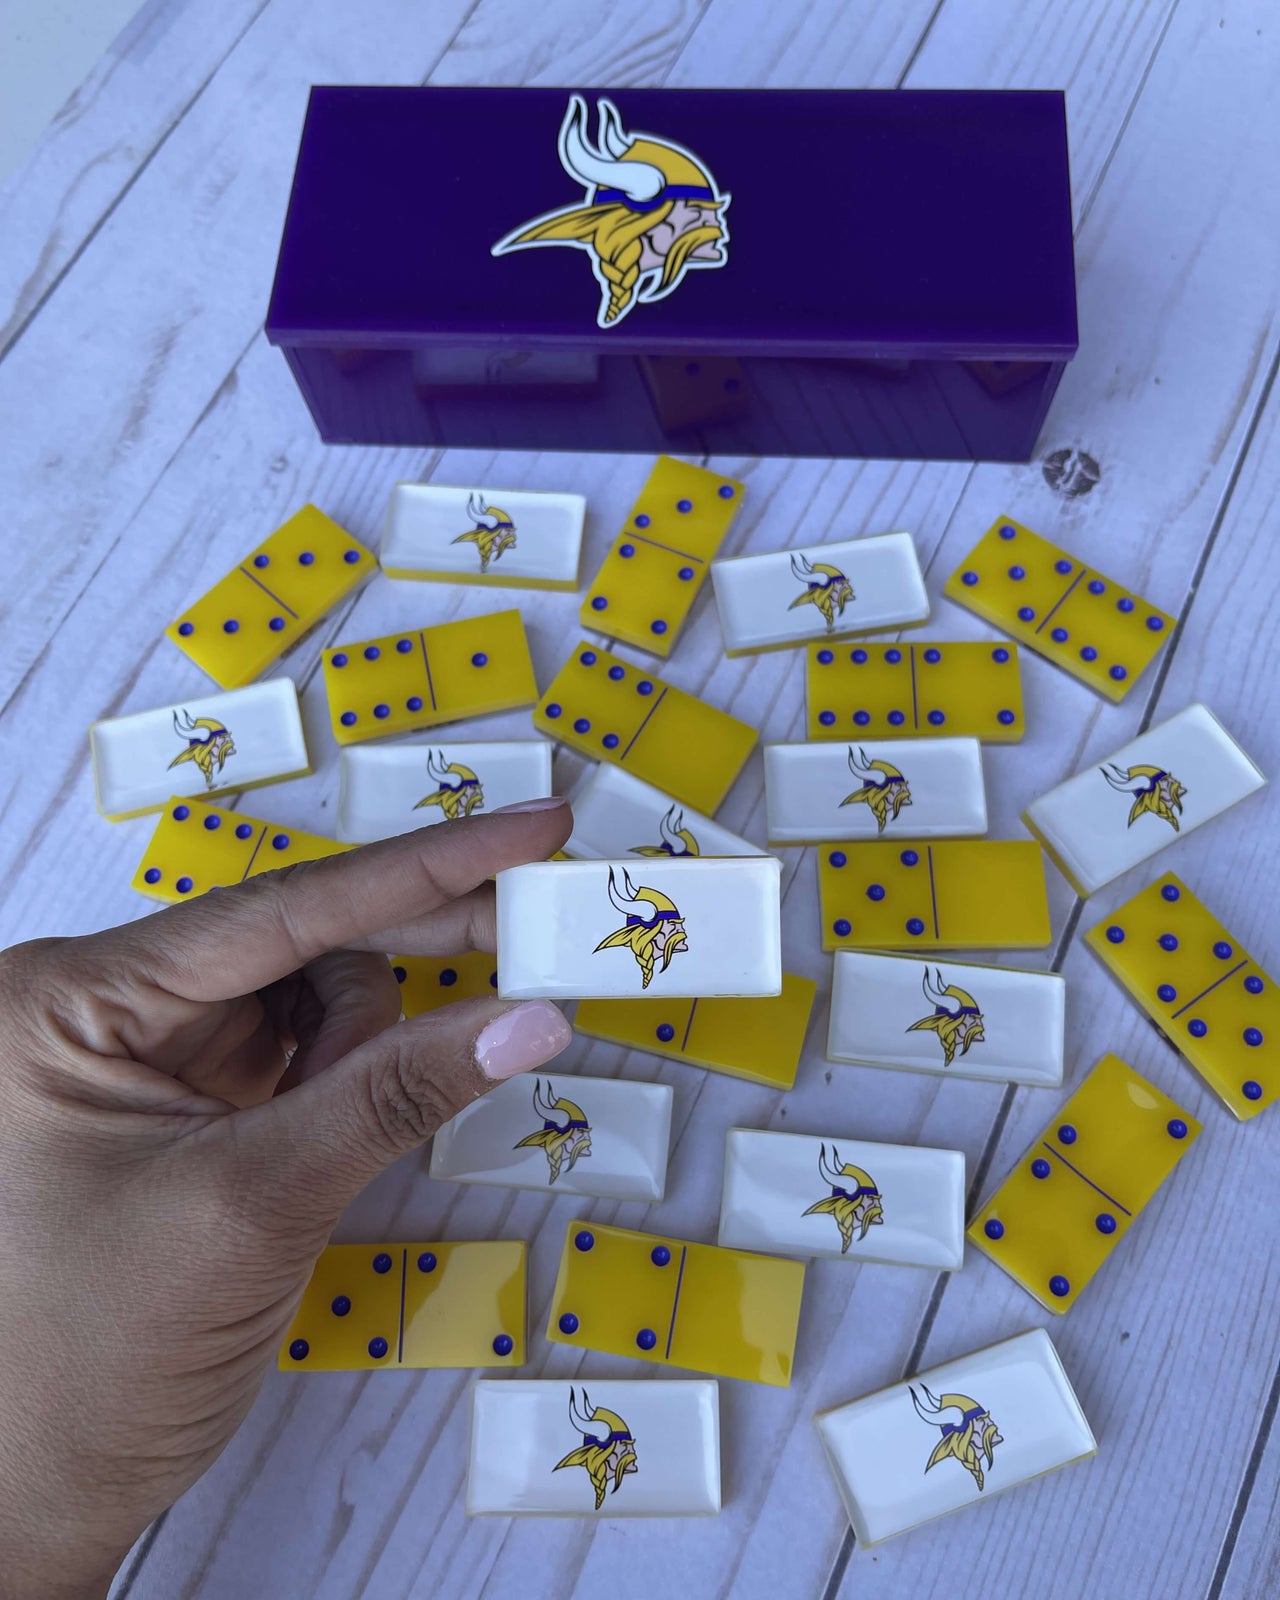 Minnesota Vikings Dominoes Set American Football NFL Custom Resin Dominoes